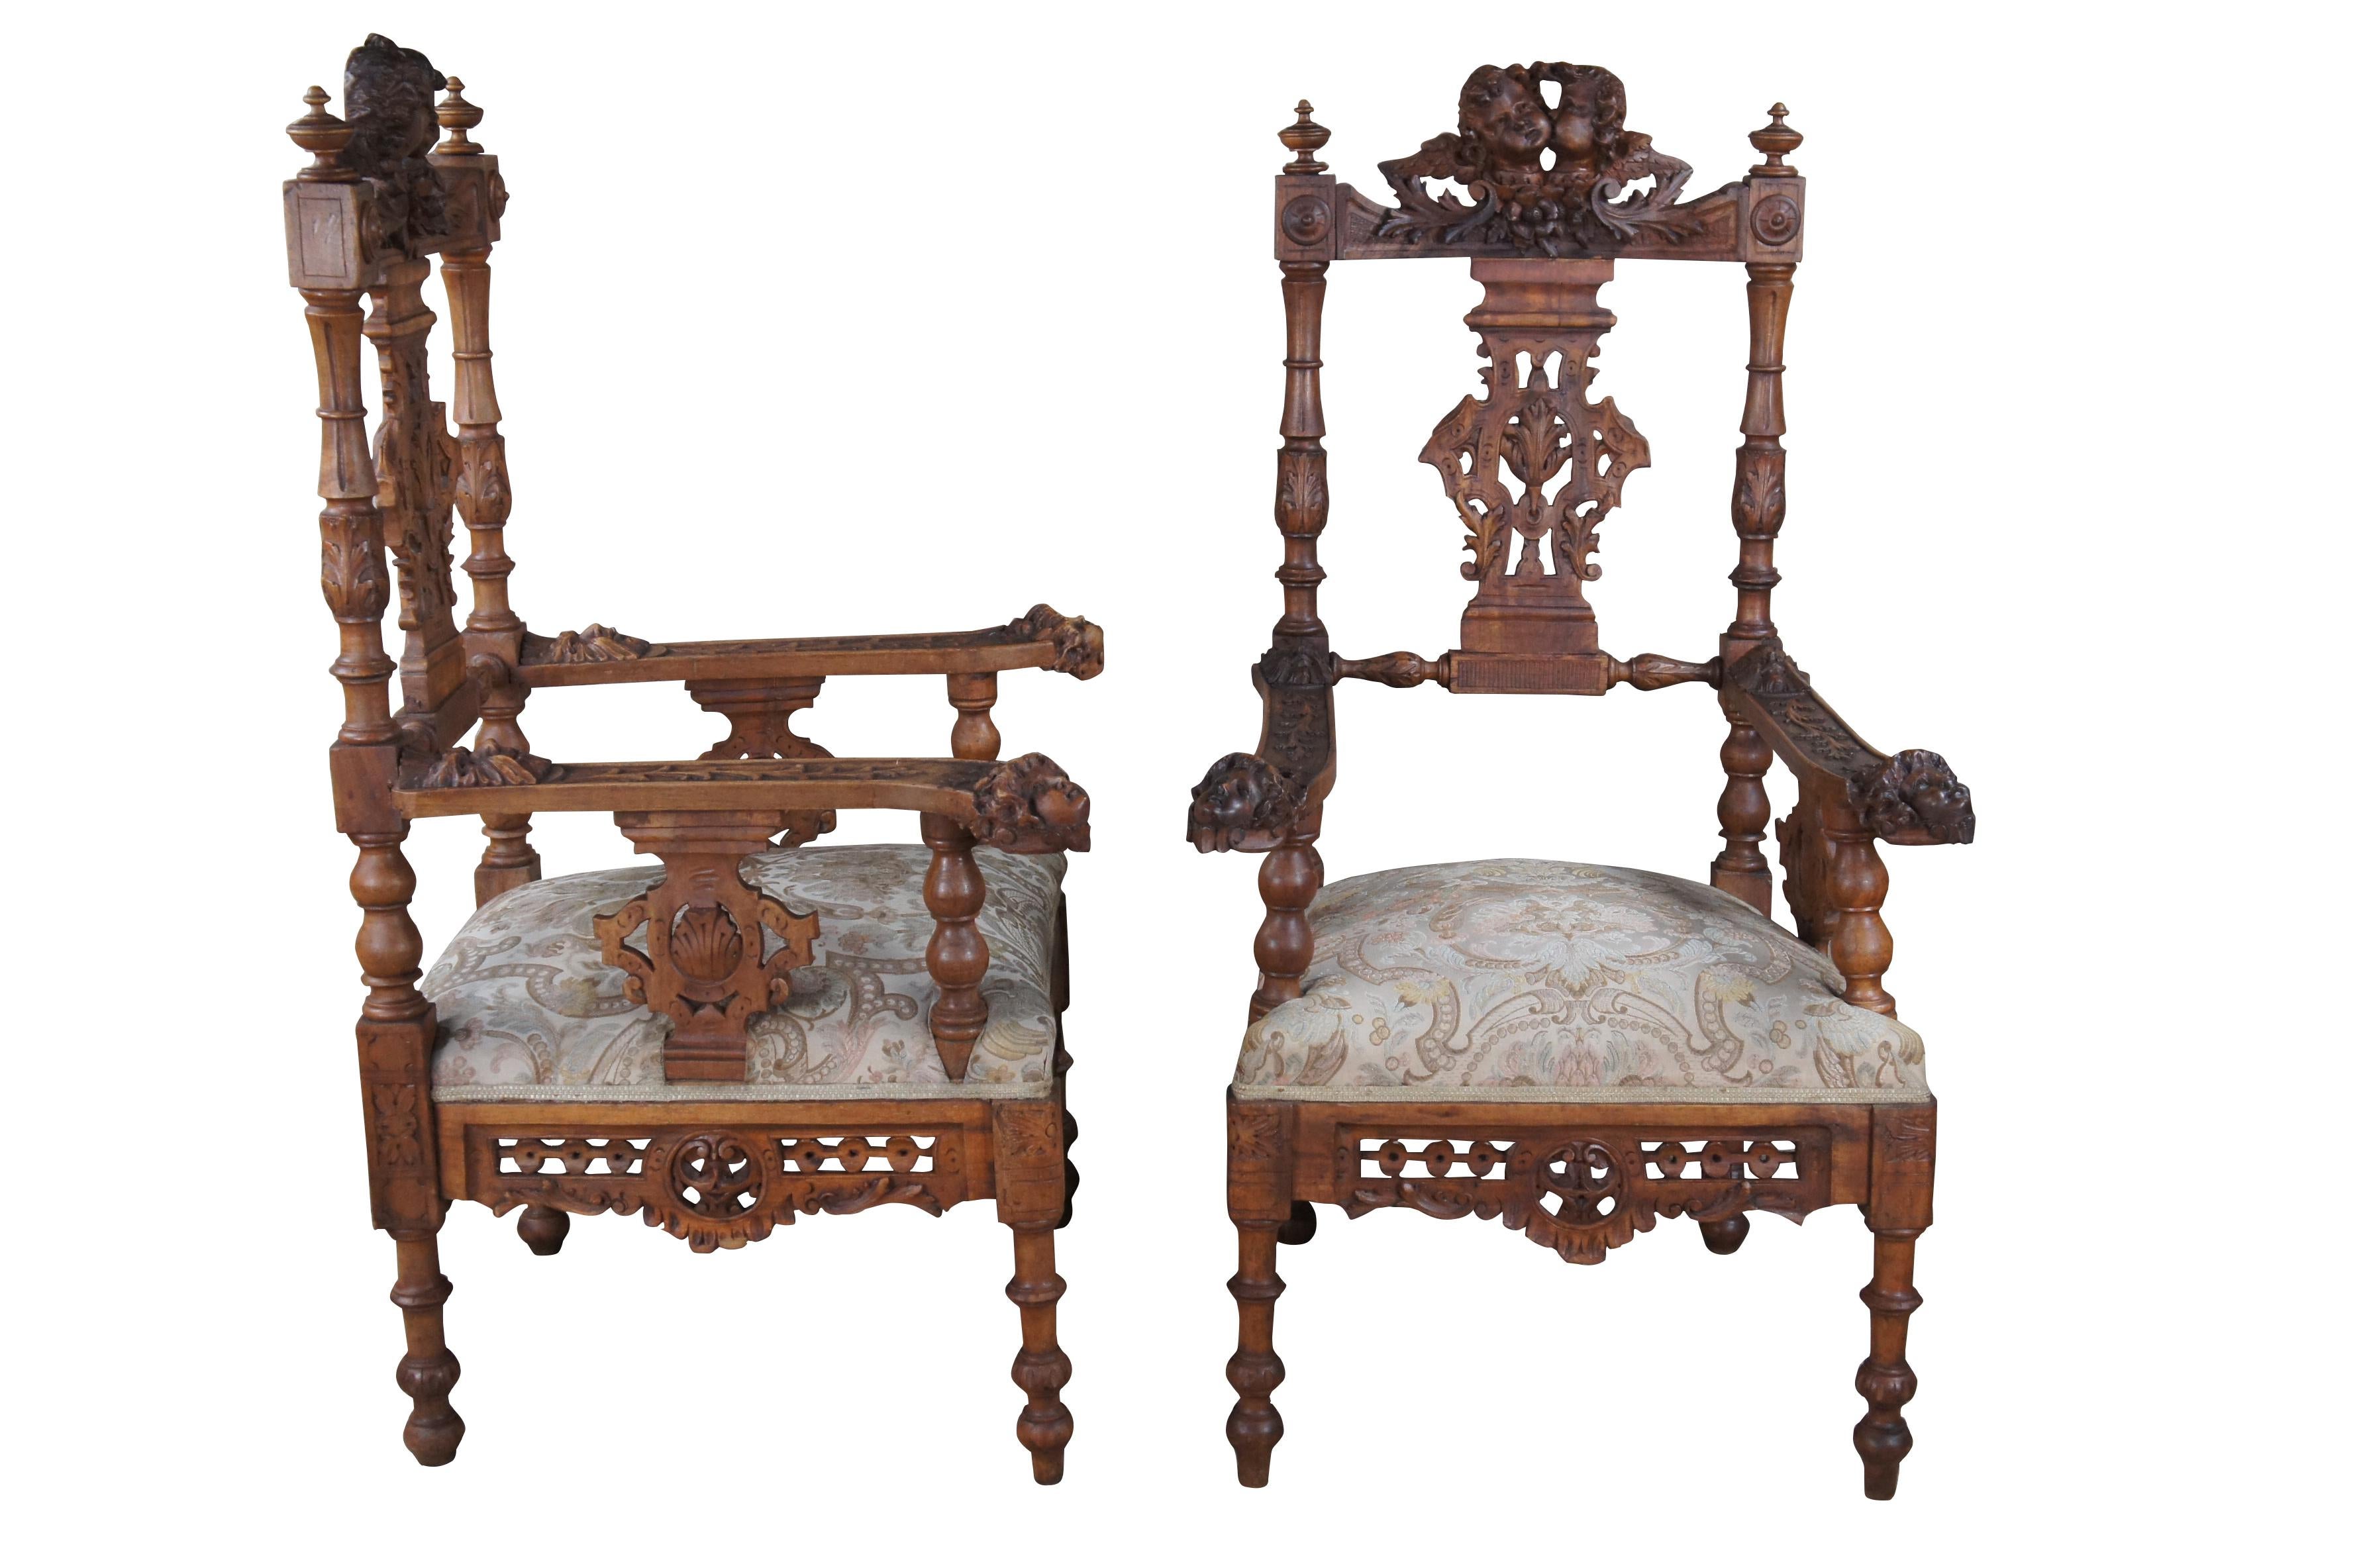 Deux anciens fauteuils de salon de la Renaissance italienne, vers les années 1870.  Fabriquée en noyer, elle présente un décor sculpté et réticulé orné de puttis, d'anges et de chérubins.

DIMENSIONS

24,5